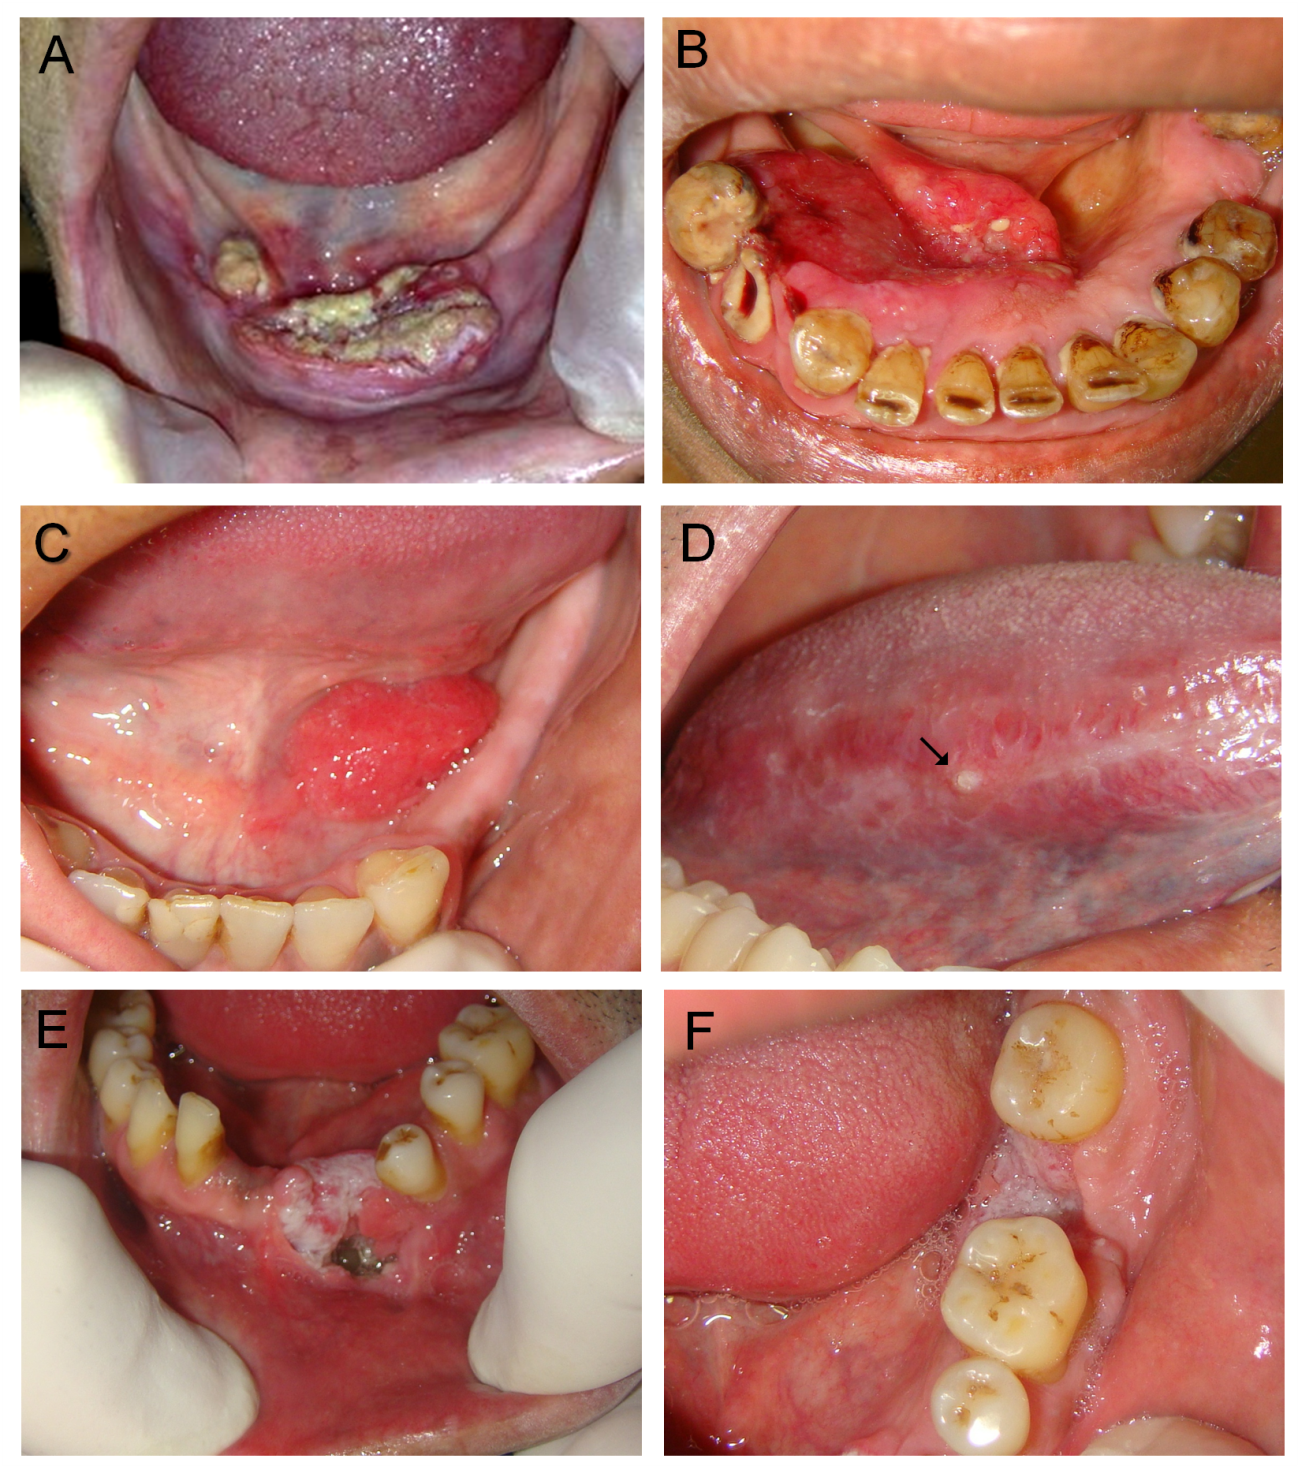 Hpv warts tongue treatment